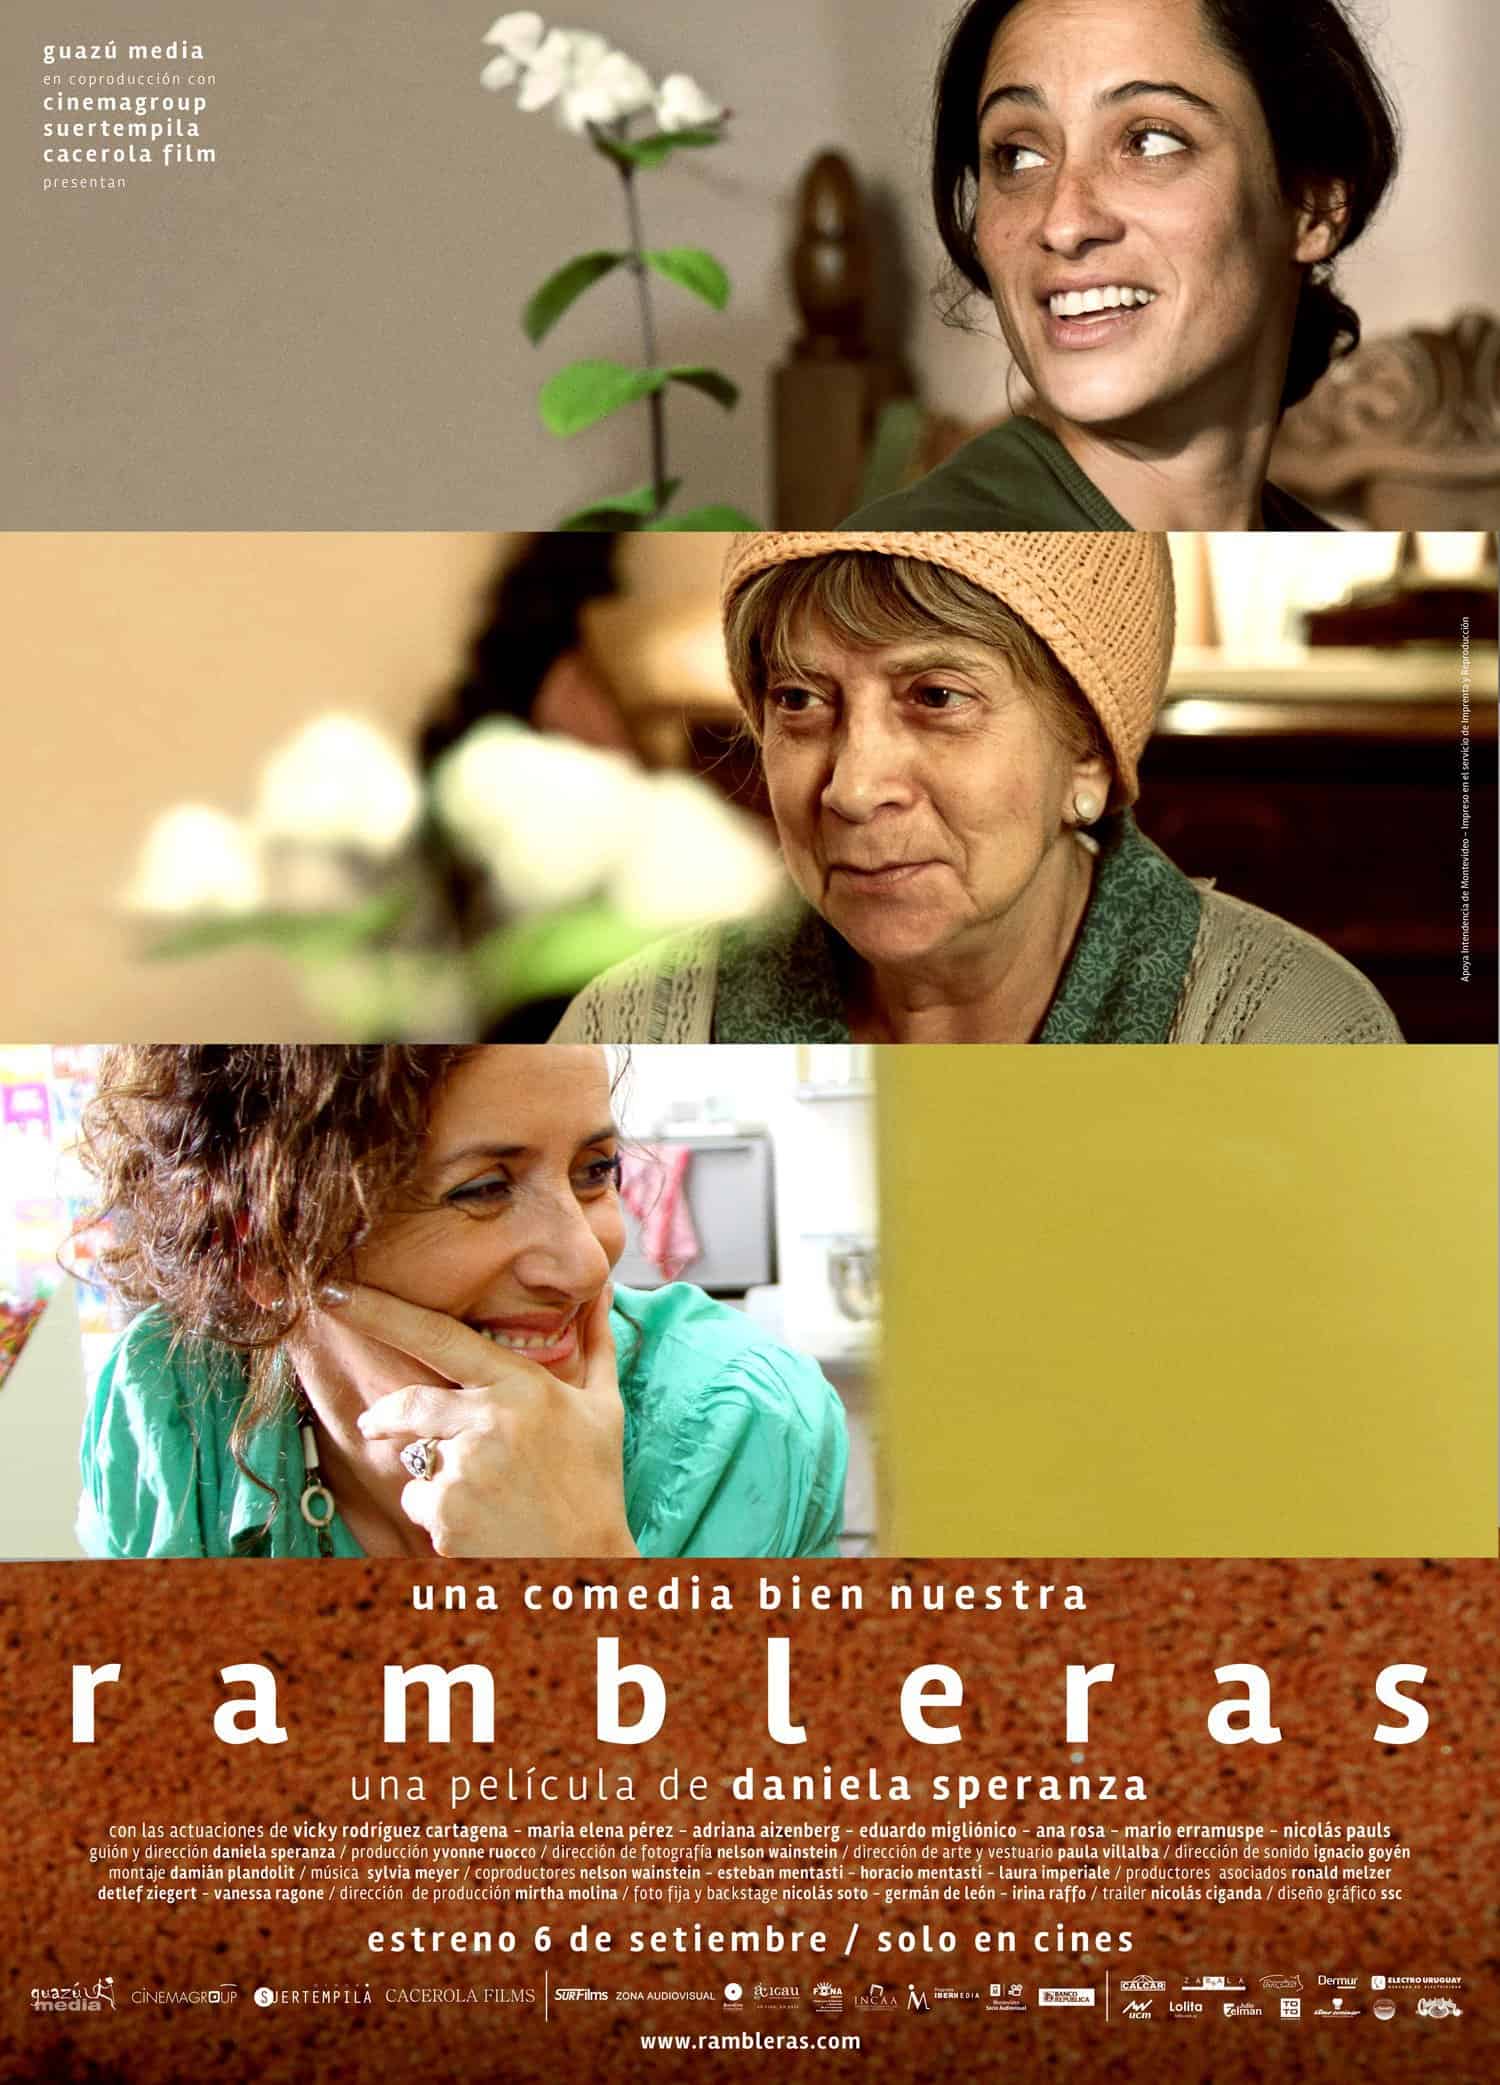 Rambleras movie Uruguay 1